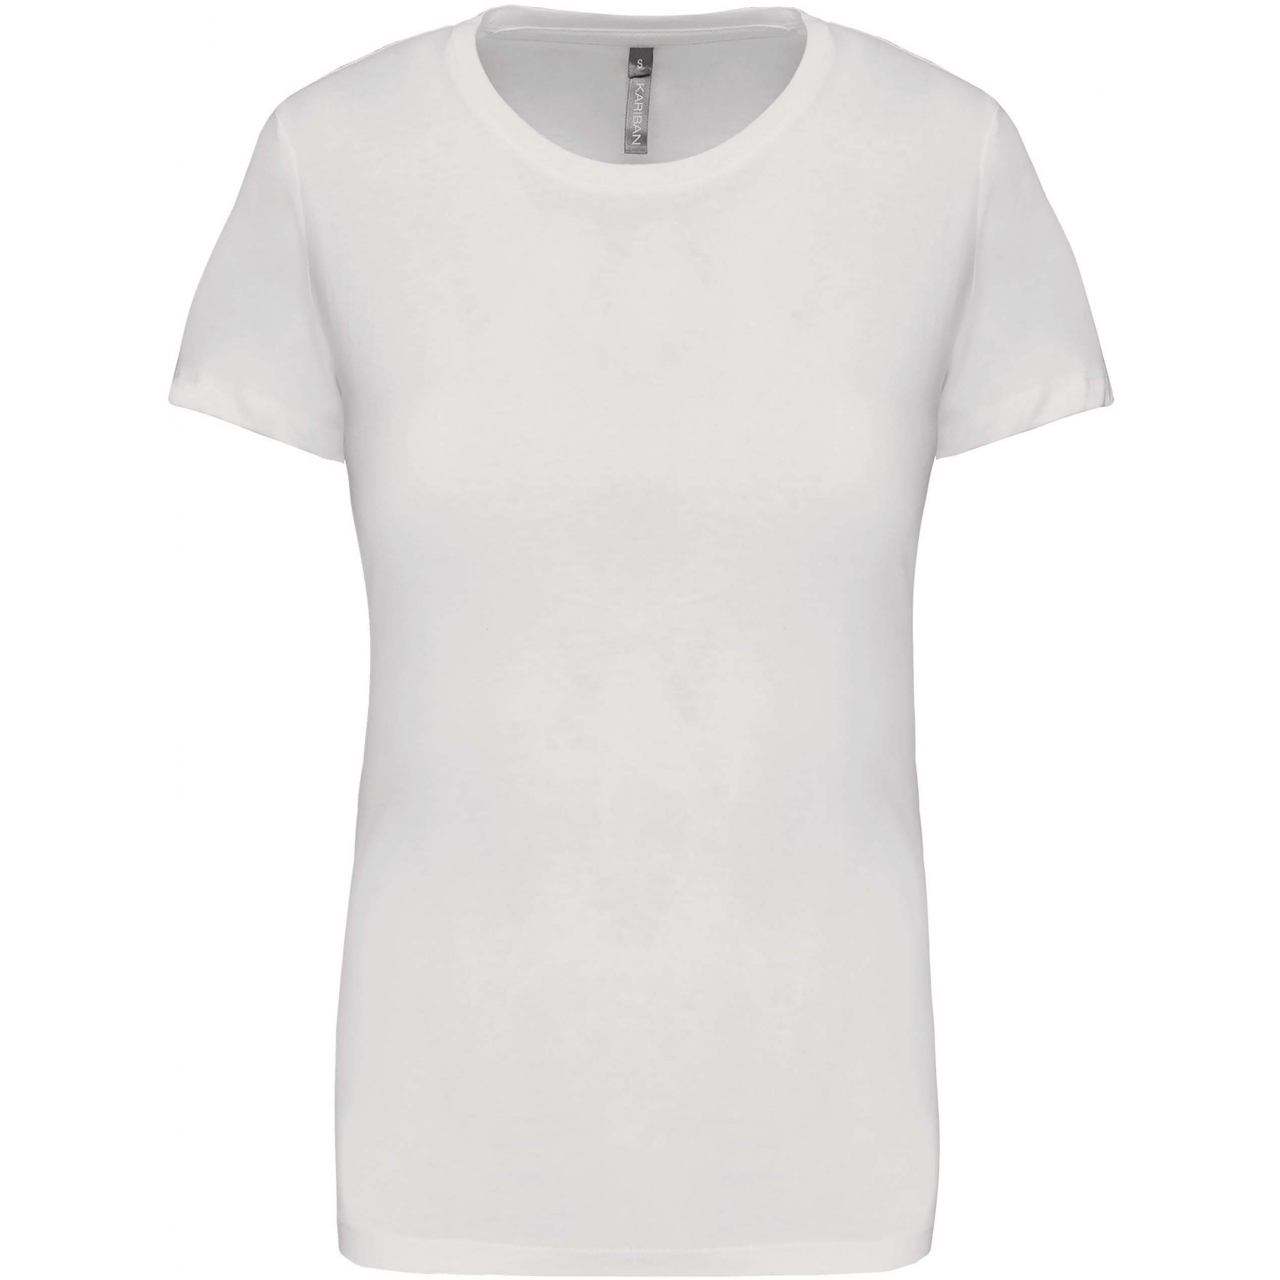 Dámské tričko Kariban s krátkým rukávem - bílé, S